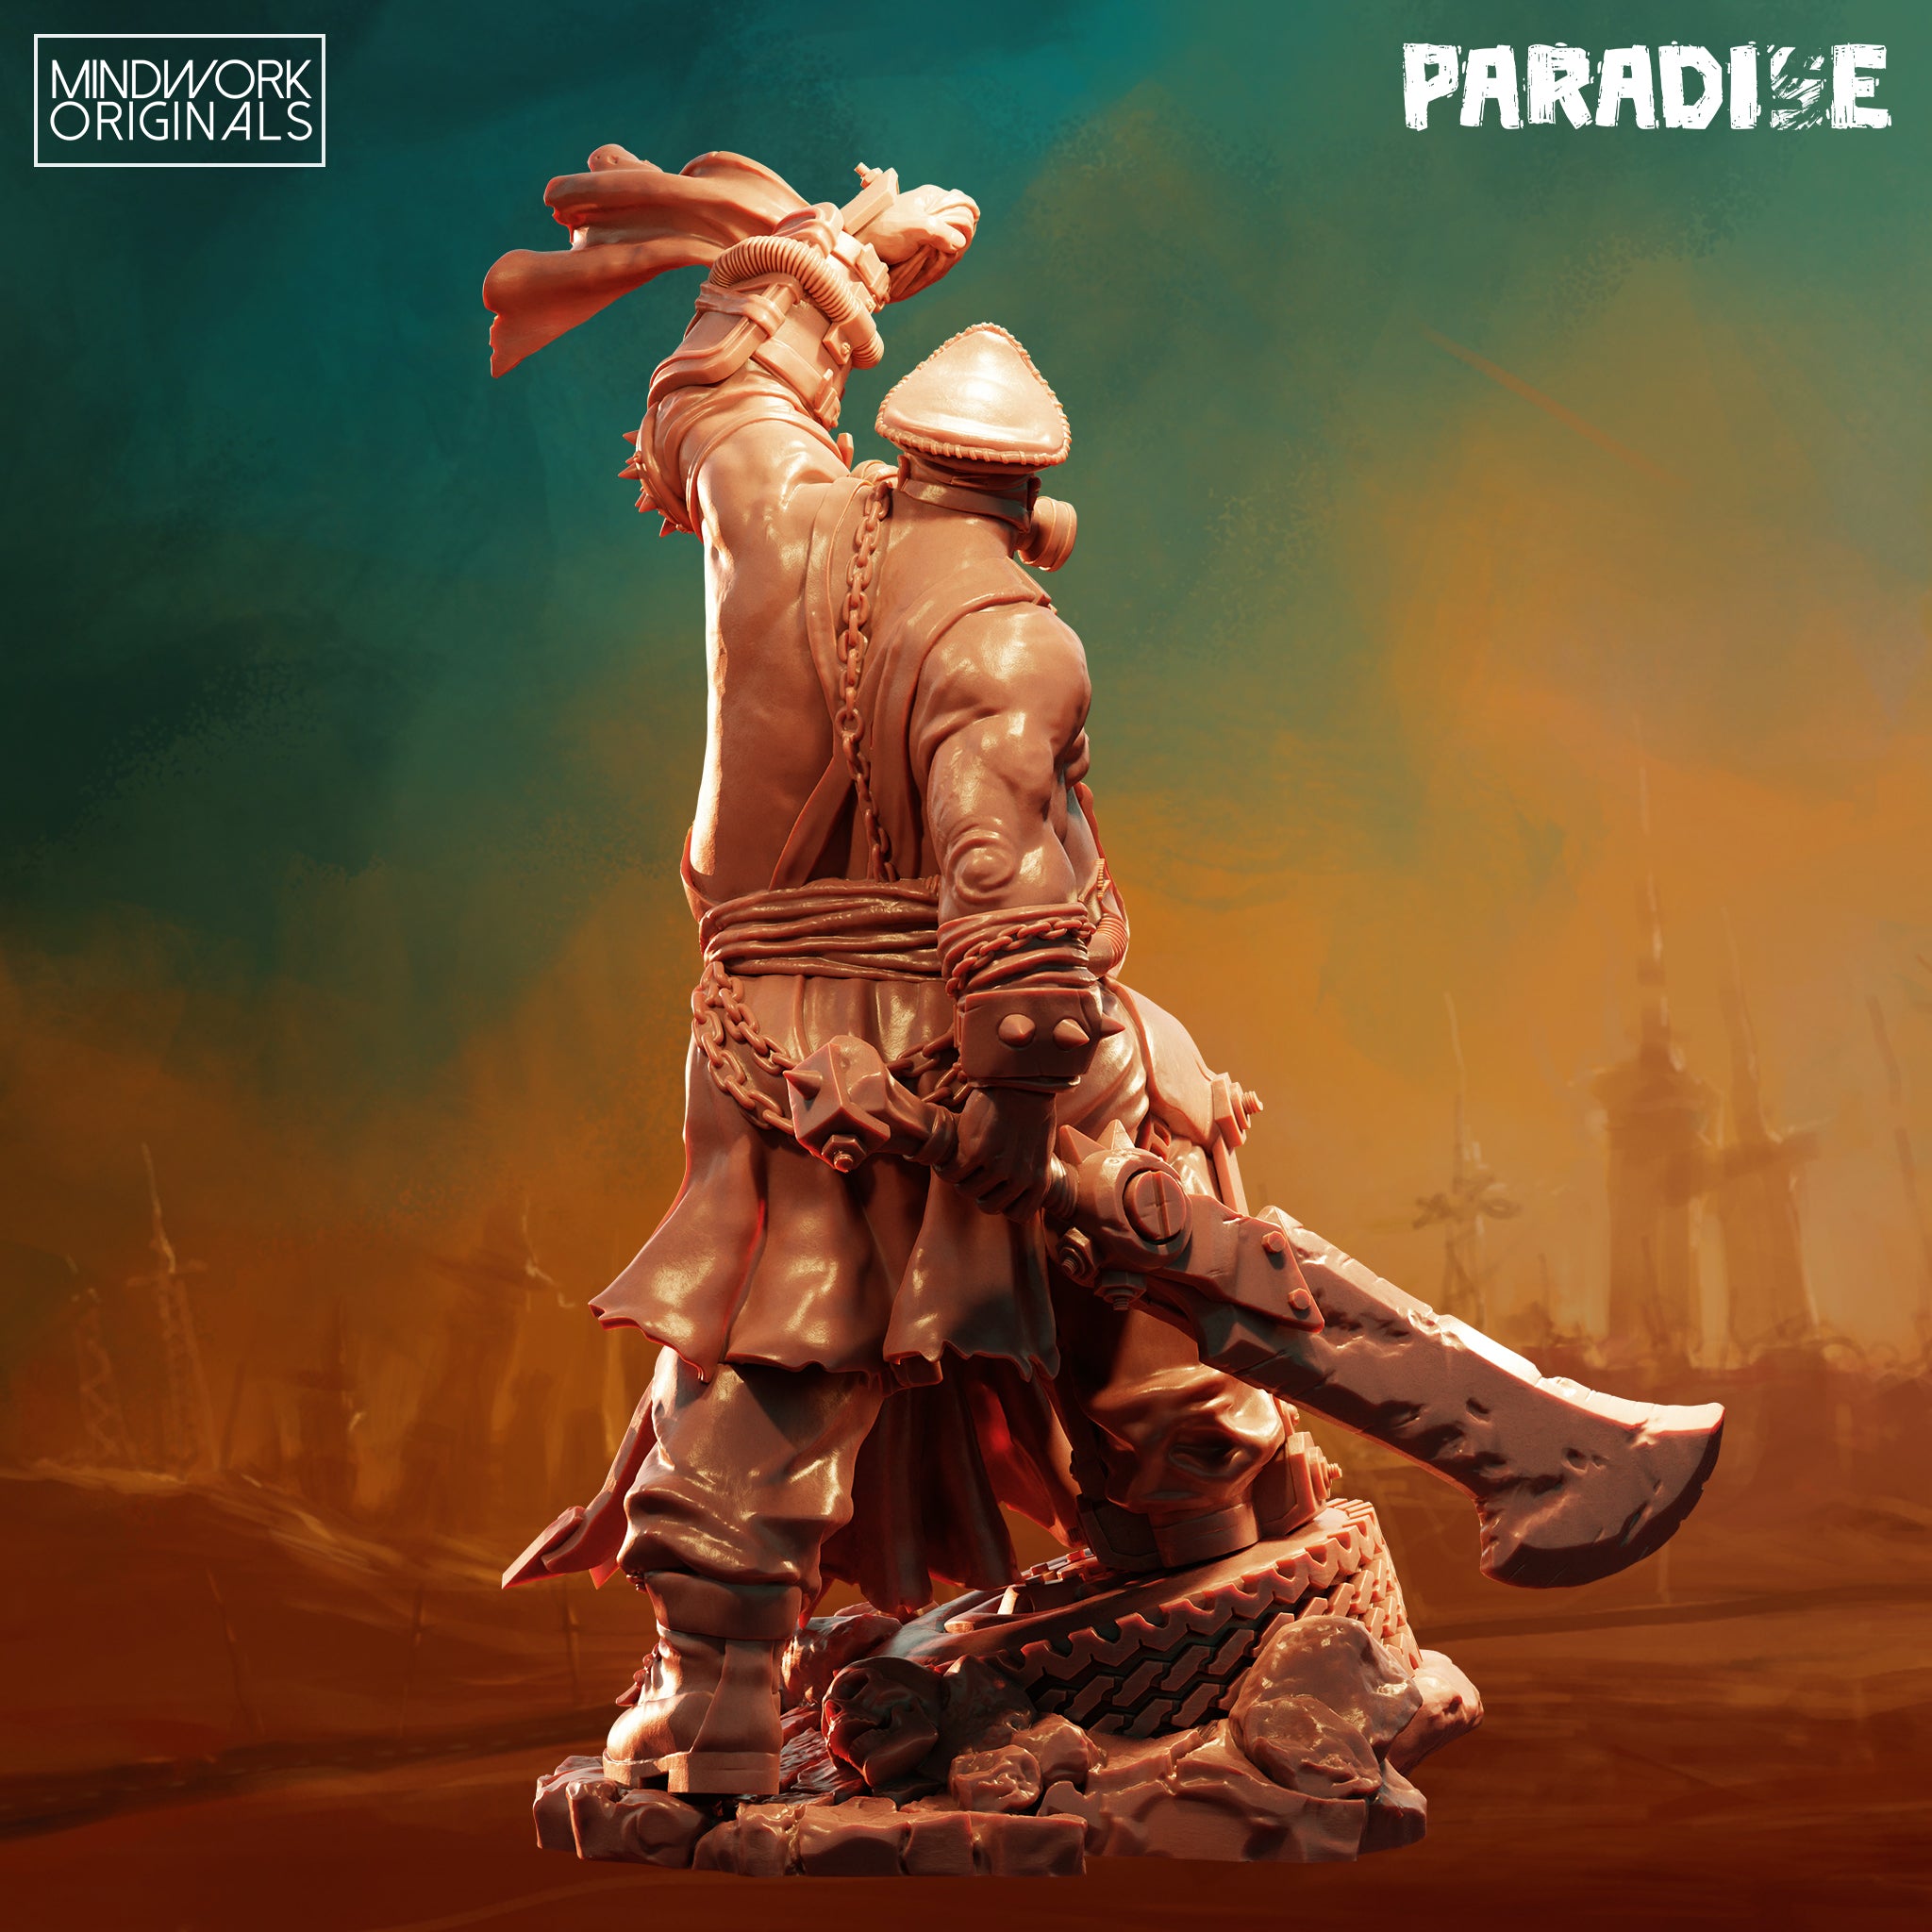 Paradise - Lt. Habram